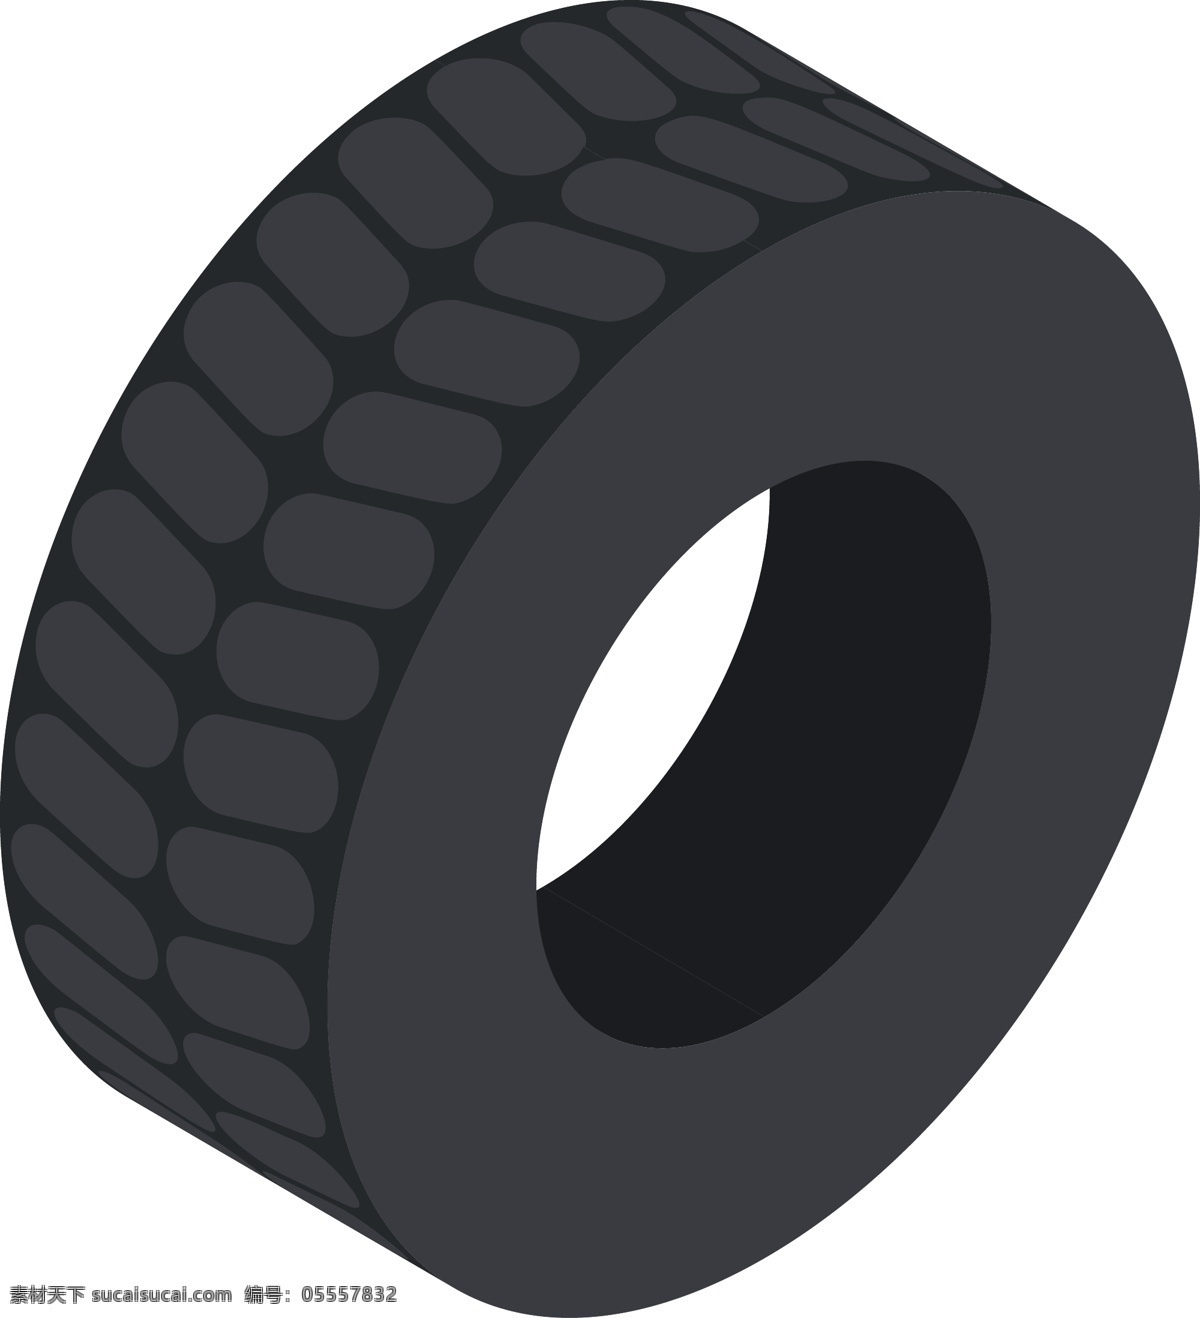 简约 风格 轮胎 元素 商用 生活 休闲 圆形 黑色 日常 橡胶